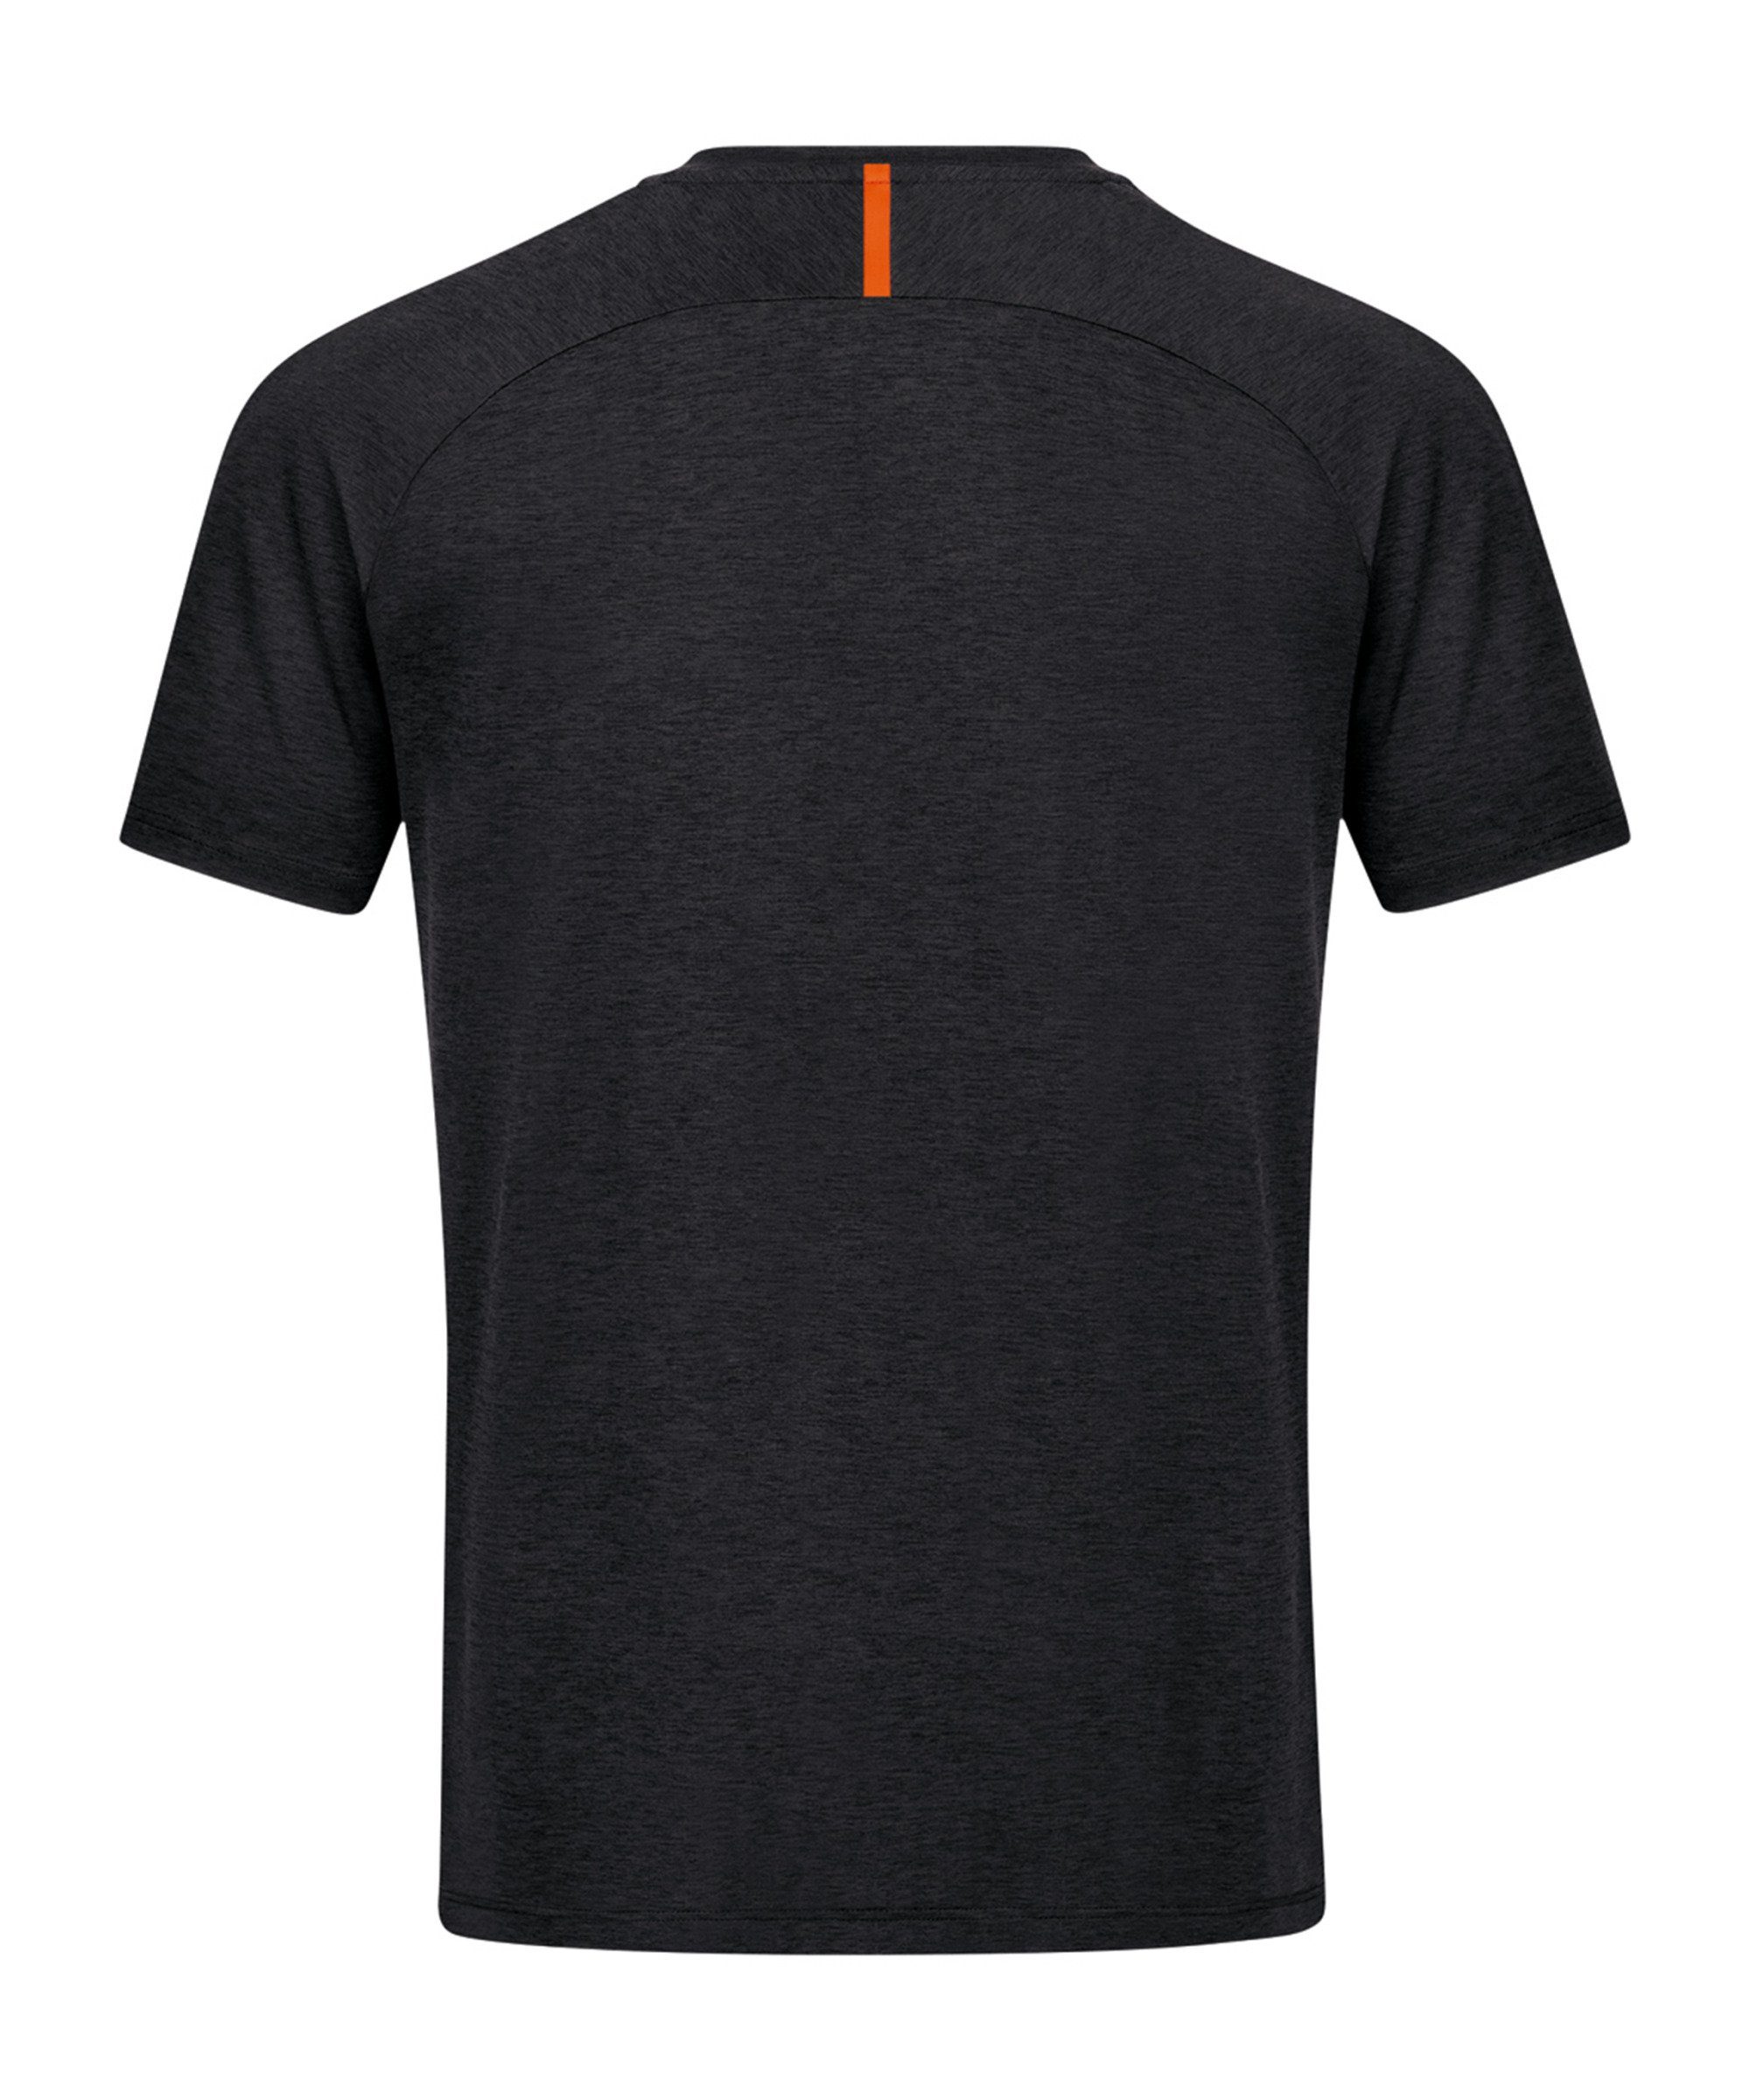 Freizeit Jako default T-Shirt schwarzorange T-Shirt Challenge